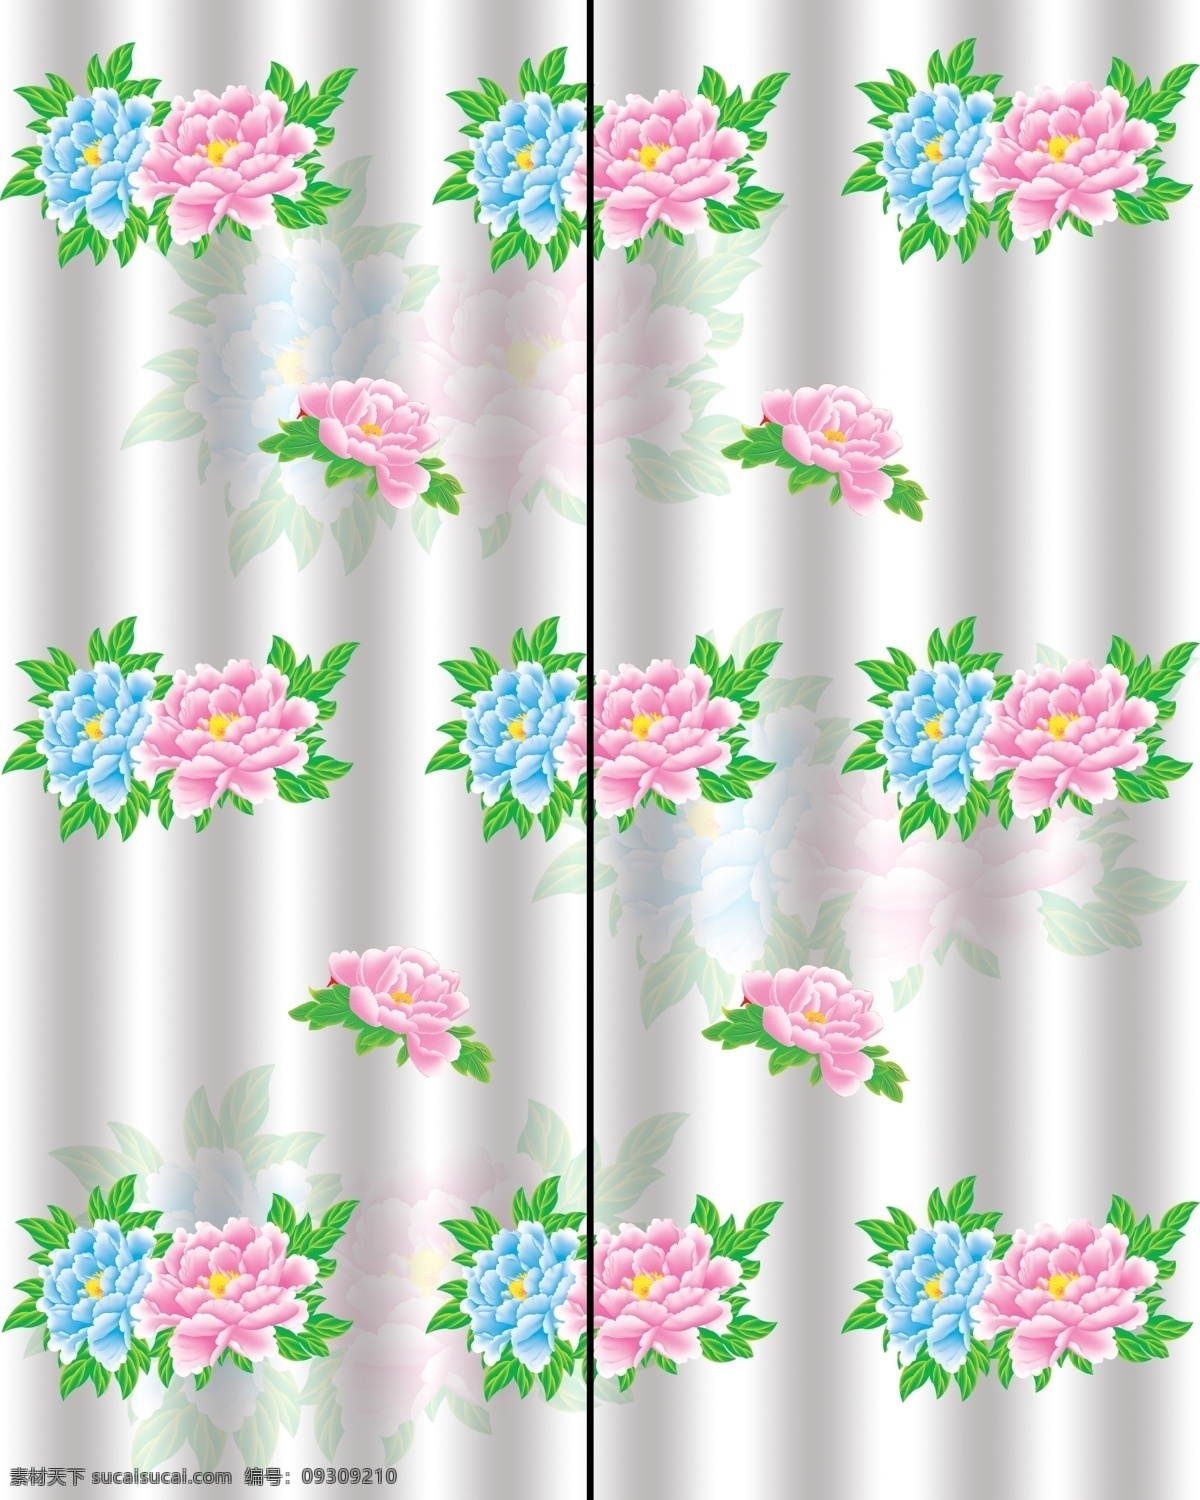 移门 花朵 背景 底纹 广告设计模板 绿叶 牡丹 移门花朵 移门图案 源文件 家居装饰素材